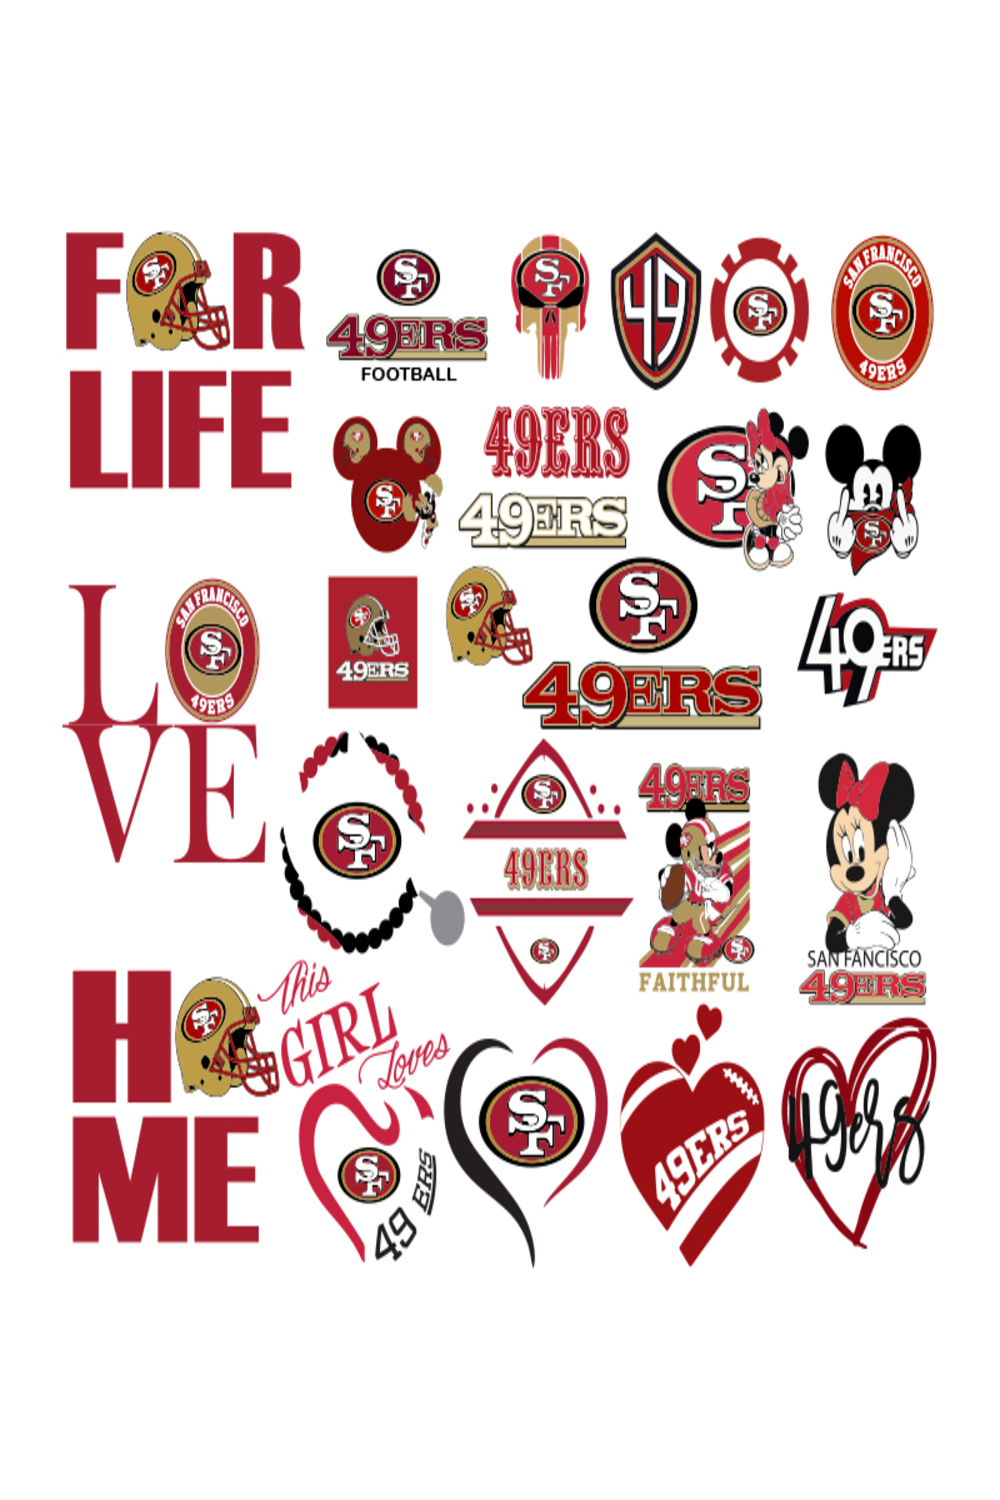 San Francisco 49ers bundle Svg, San Francisco 49ers Logo Svg, NFL football Svg, Sport logo Svg, Football logo Svg, Digital download pinterest preview image.